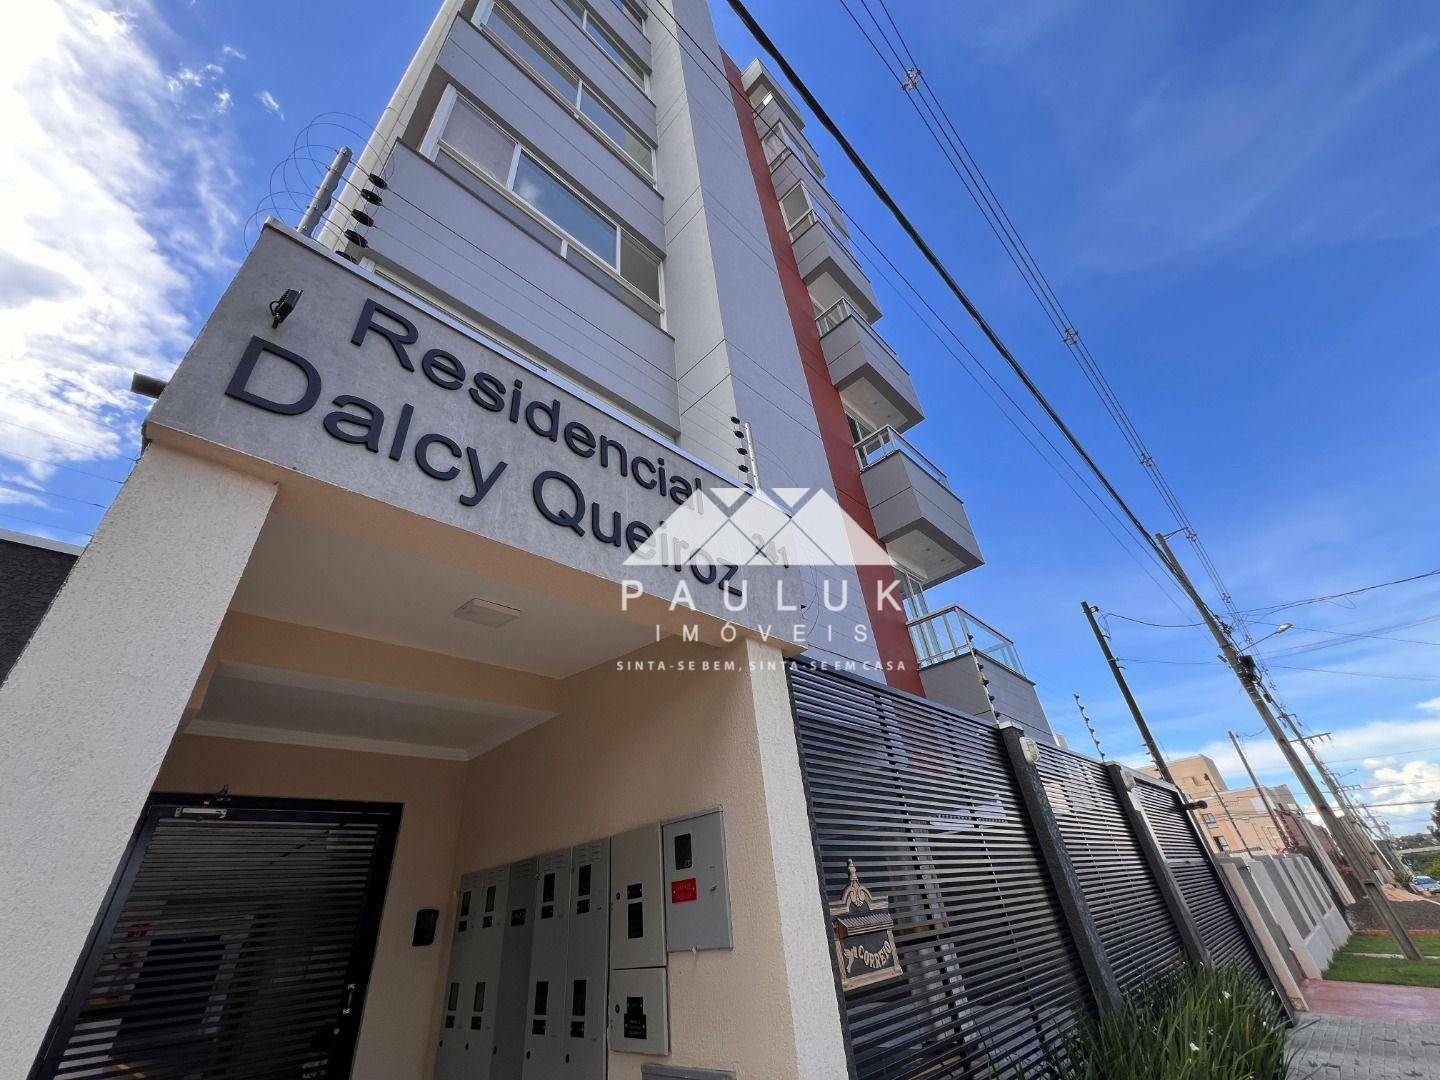 Apartamento com 2 Dormitórios Sendo 1 Suíte à venda Por R$ 440.000 - Edifício Residencial Dalcy Quei | PAULUK IMÓVEIS | Portal OBusca